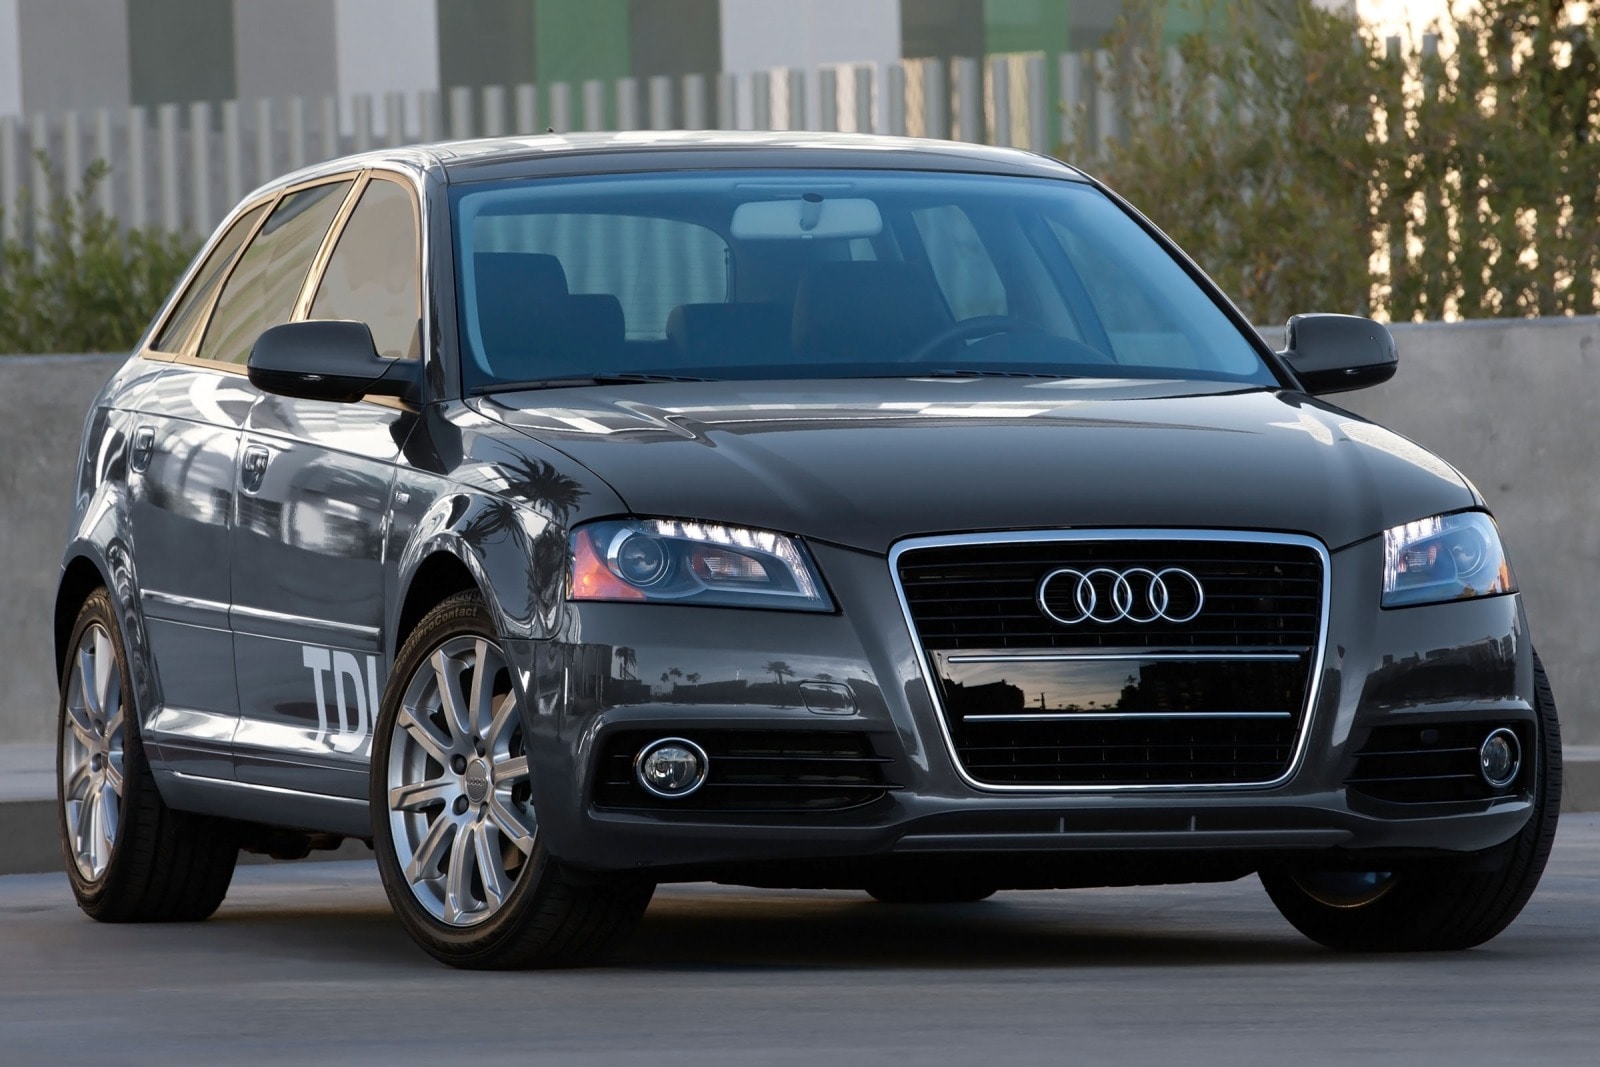 2013 Audi A3 Review & Ratings | Edmunds